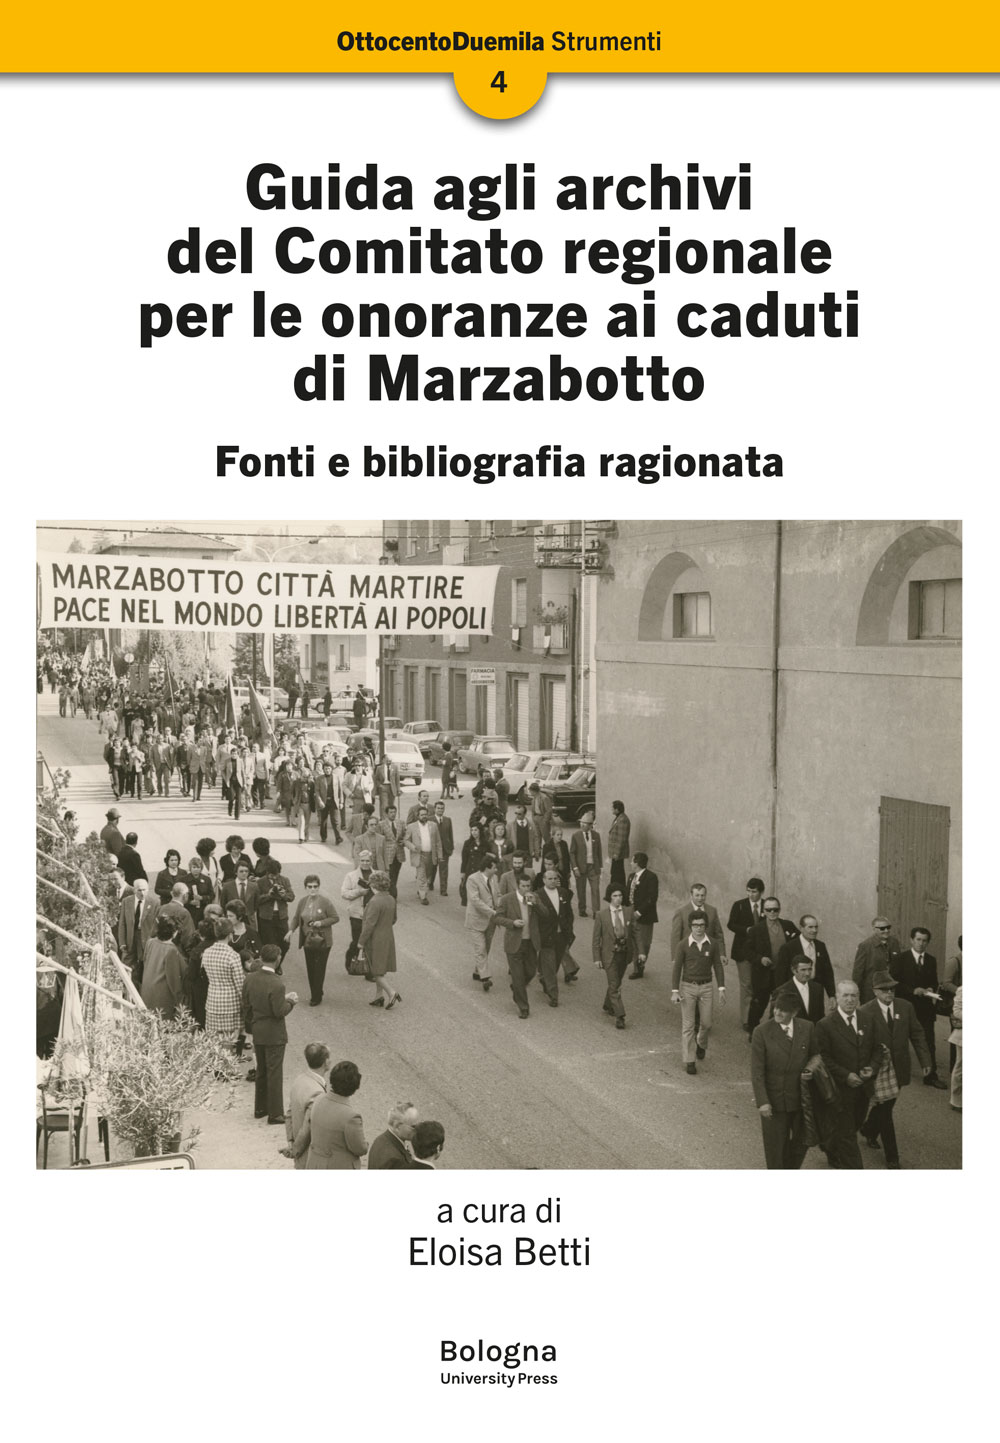 Guida agli archivi del Comitato regionale per le onoranze ai caduti di Marzabotto - Bologna University Press